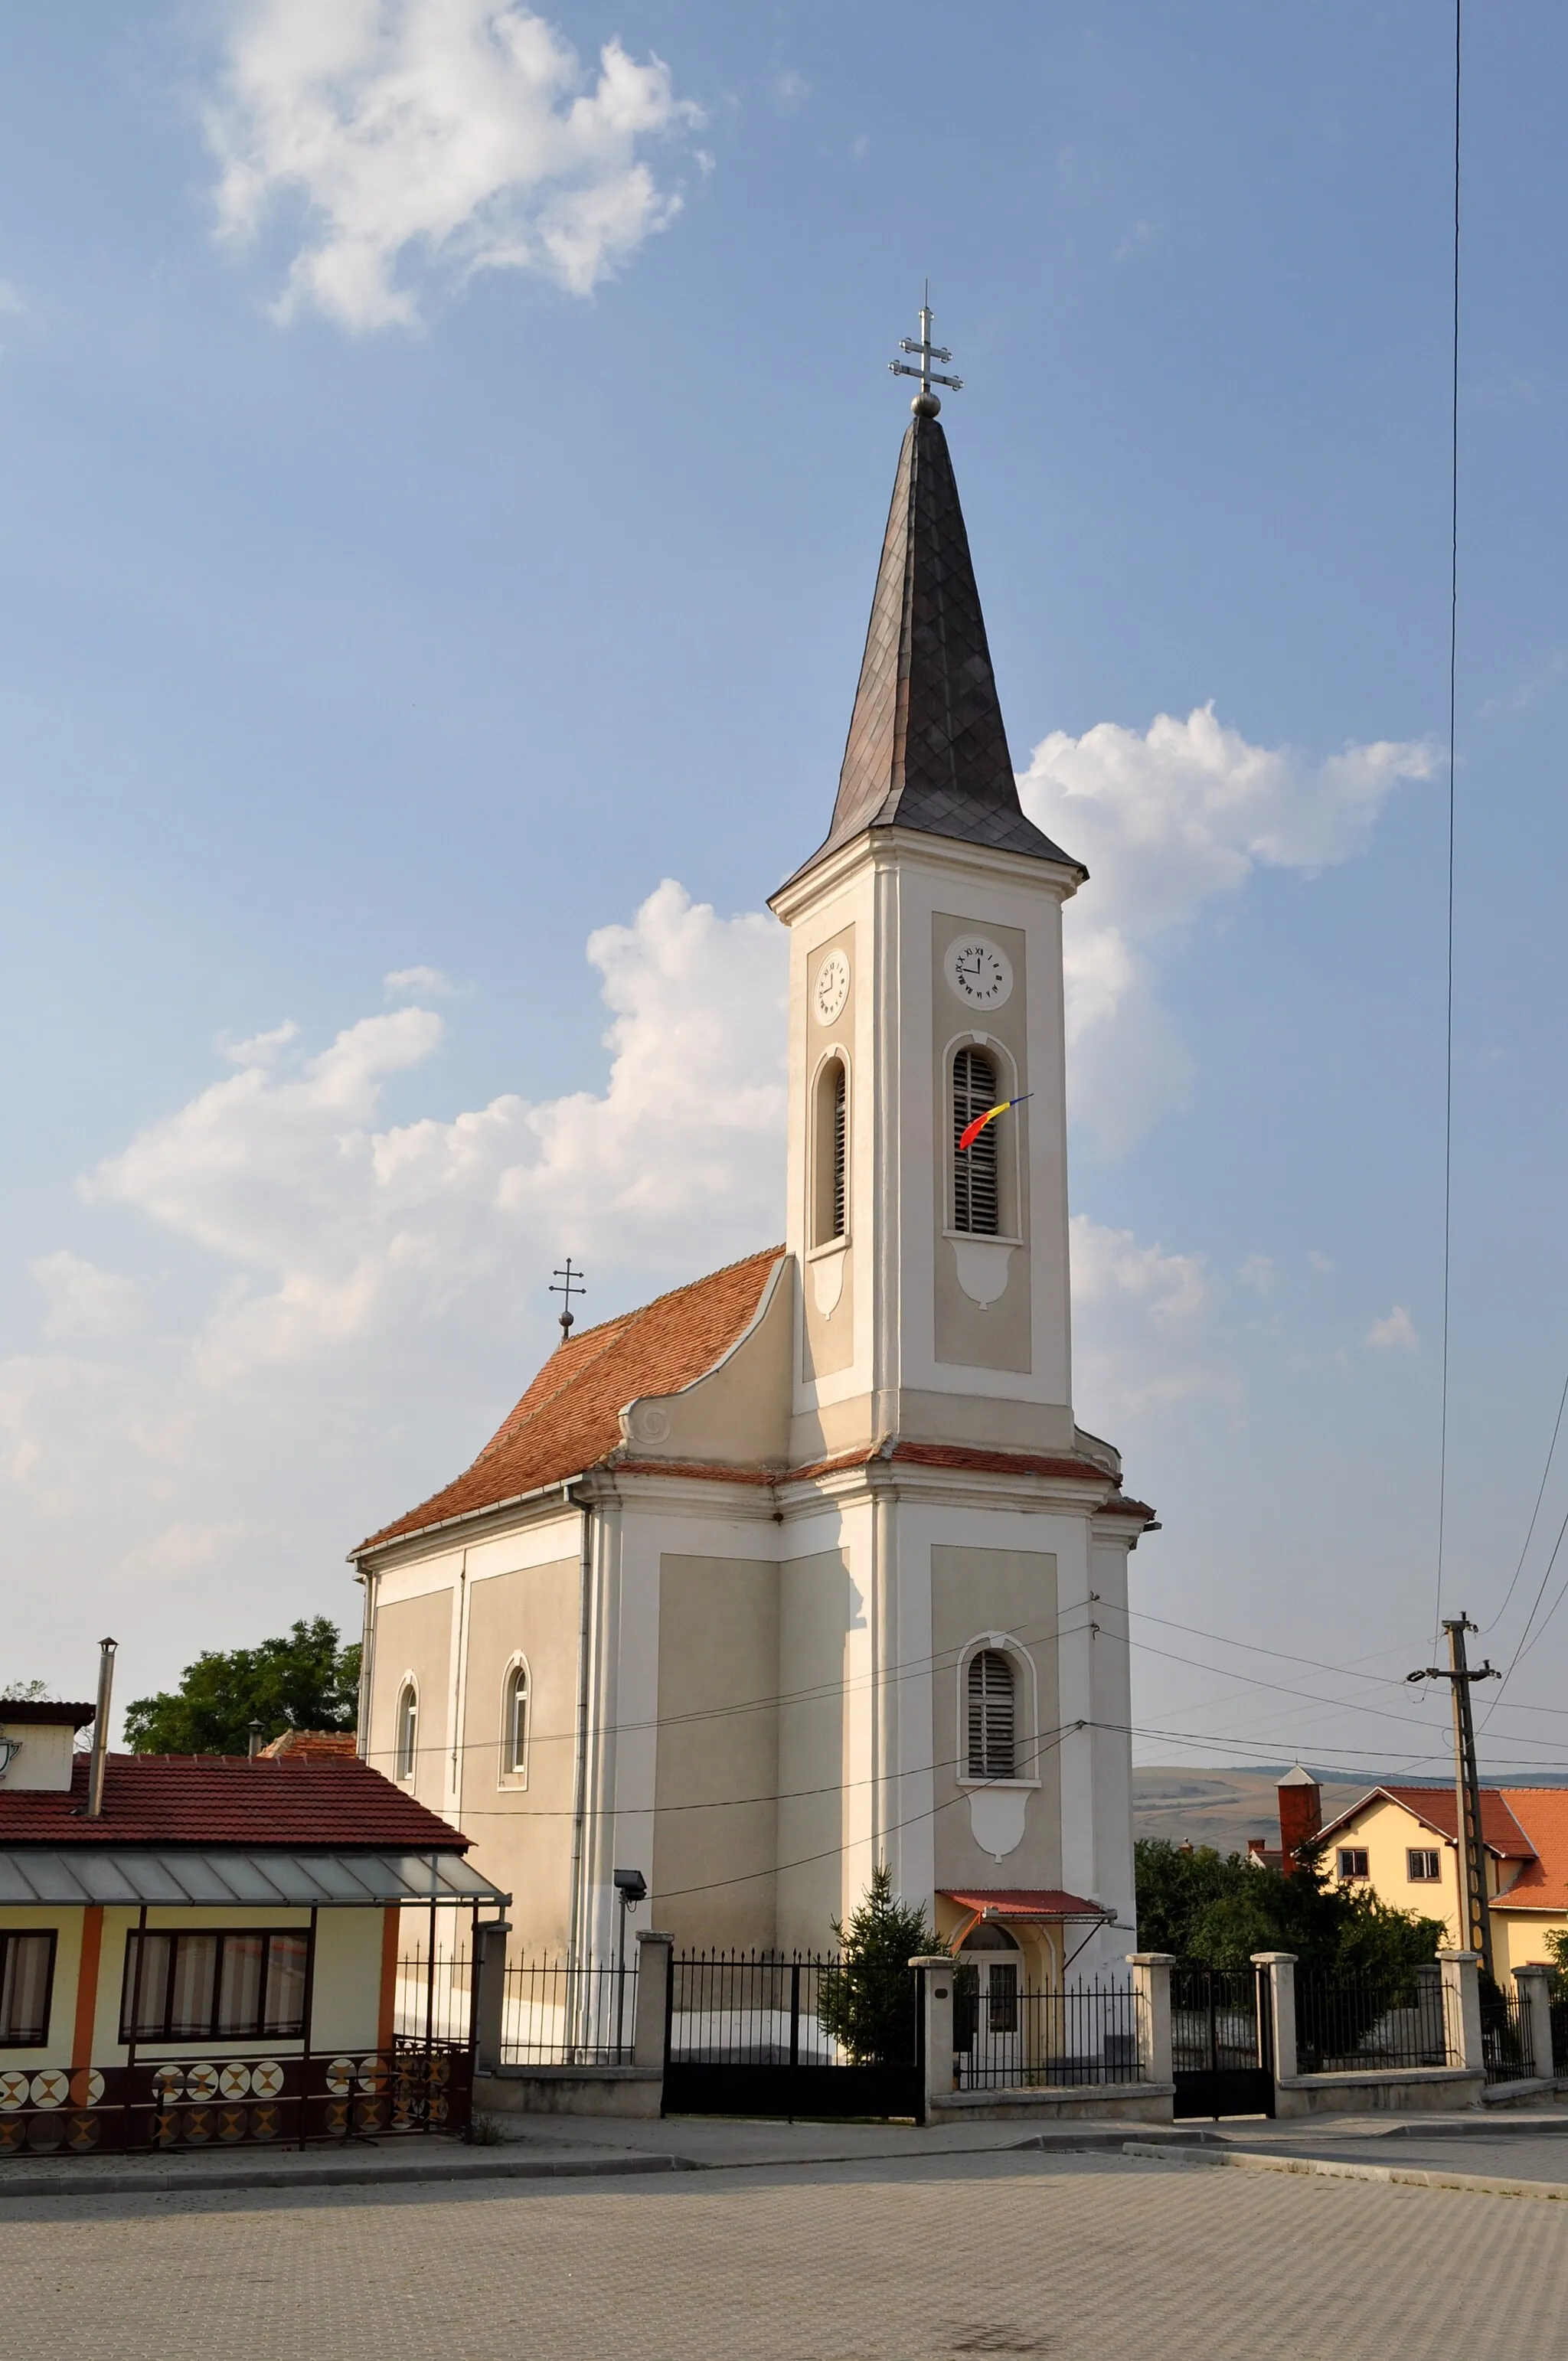 Image of Miercurea Sibiului